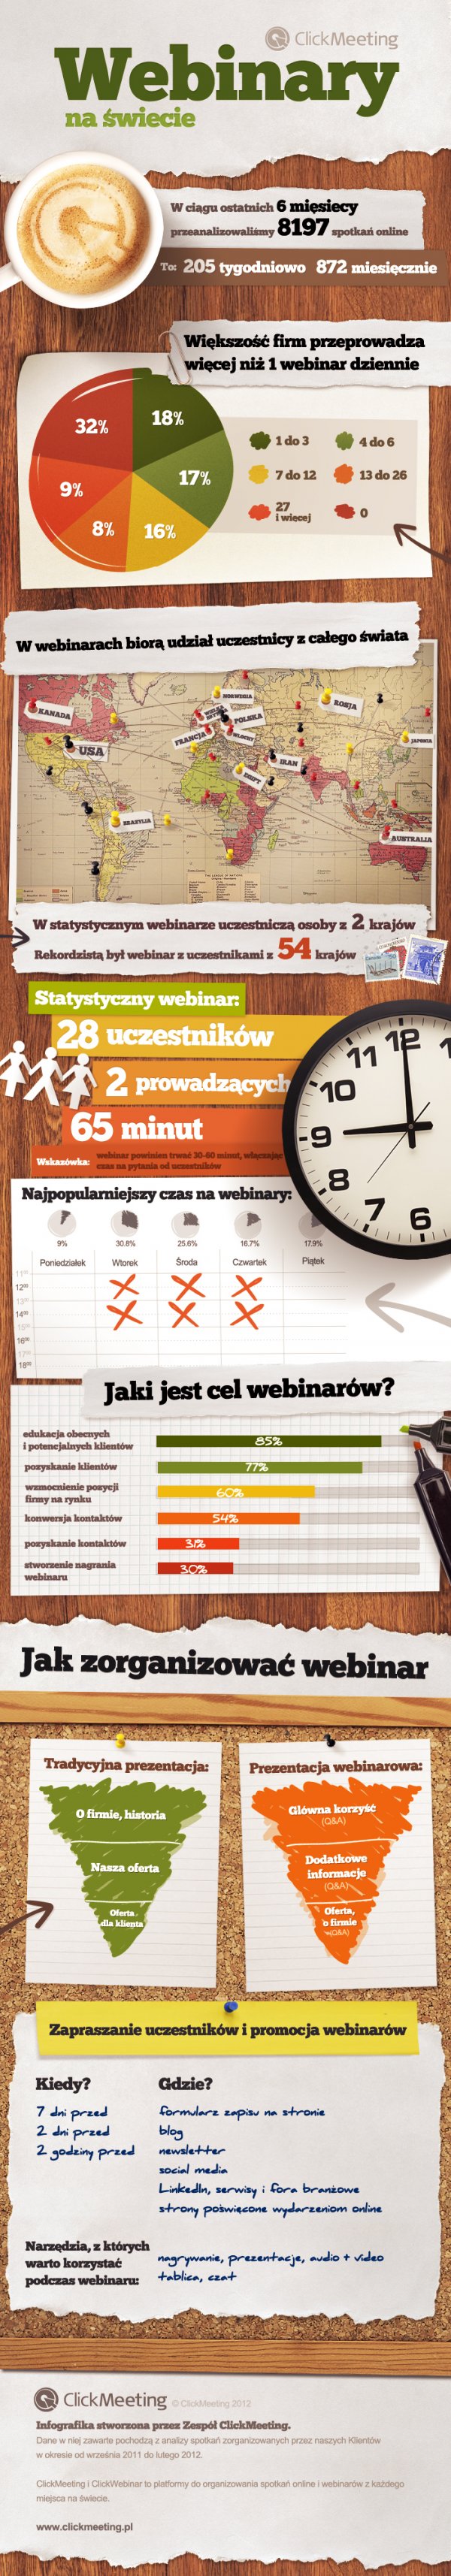 Popularność webinariów 2012